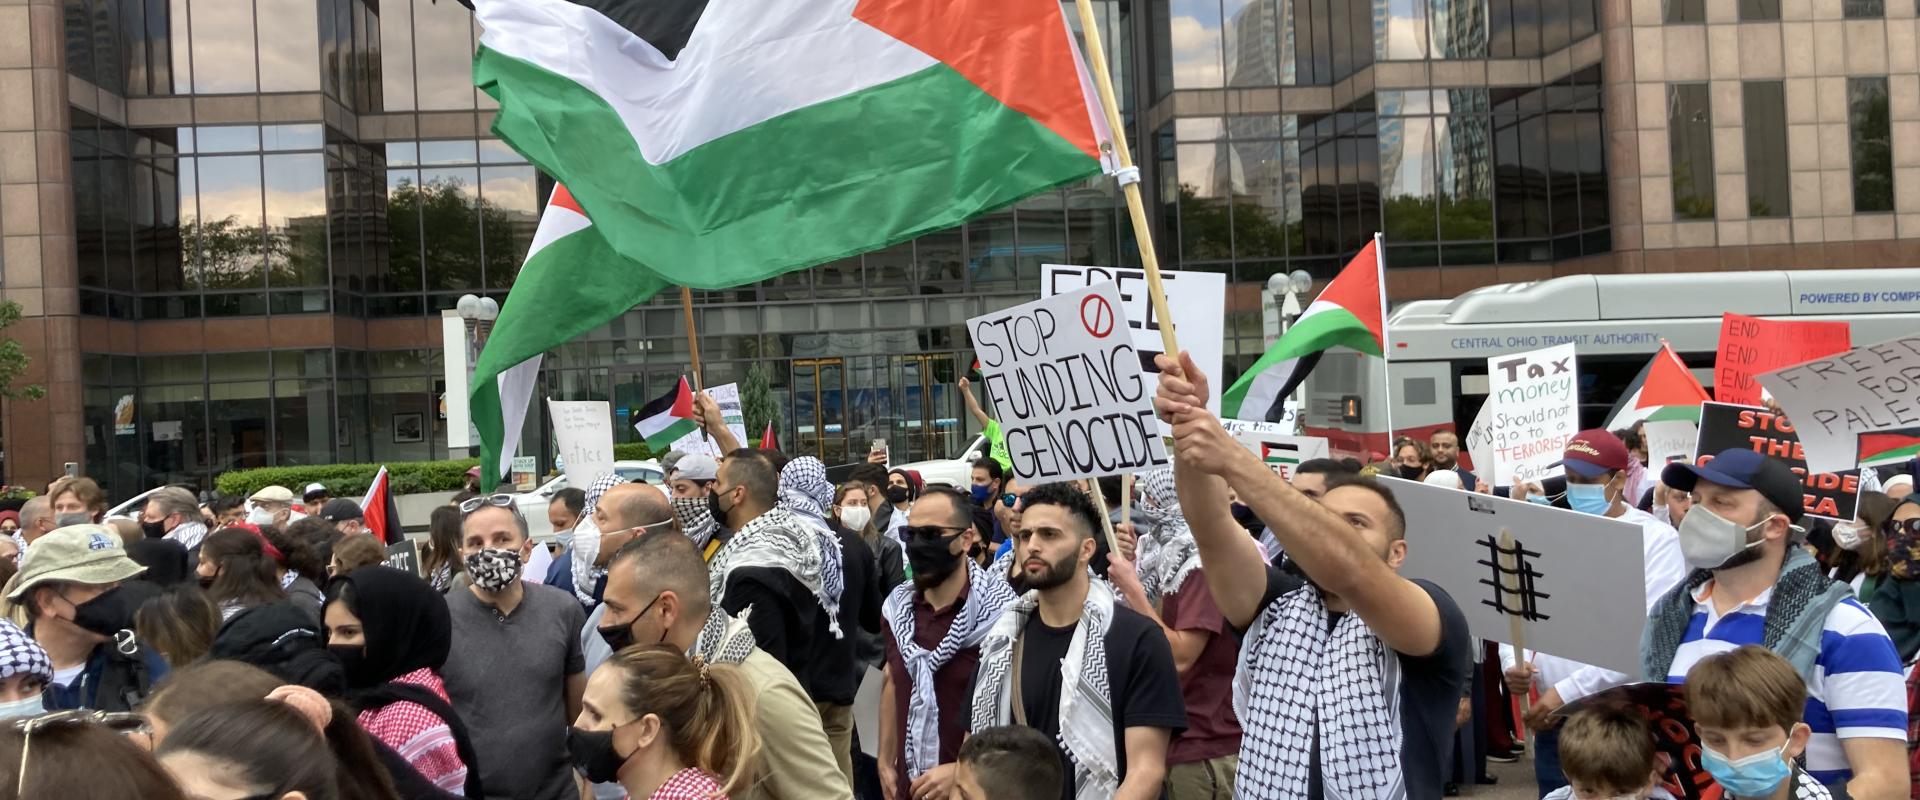 صورة للمظاهرات التي خرجت في أمريكا دعما للحقوق الفلسطينية 